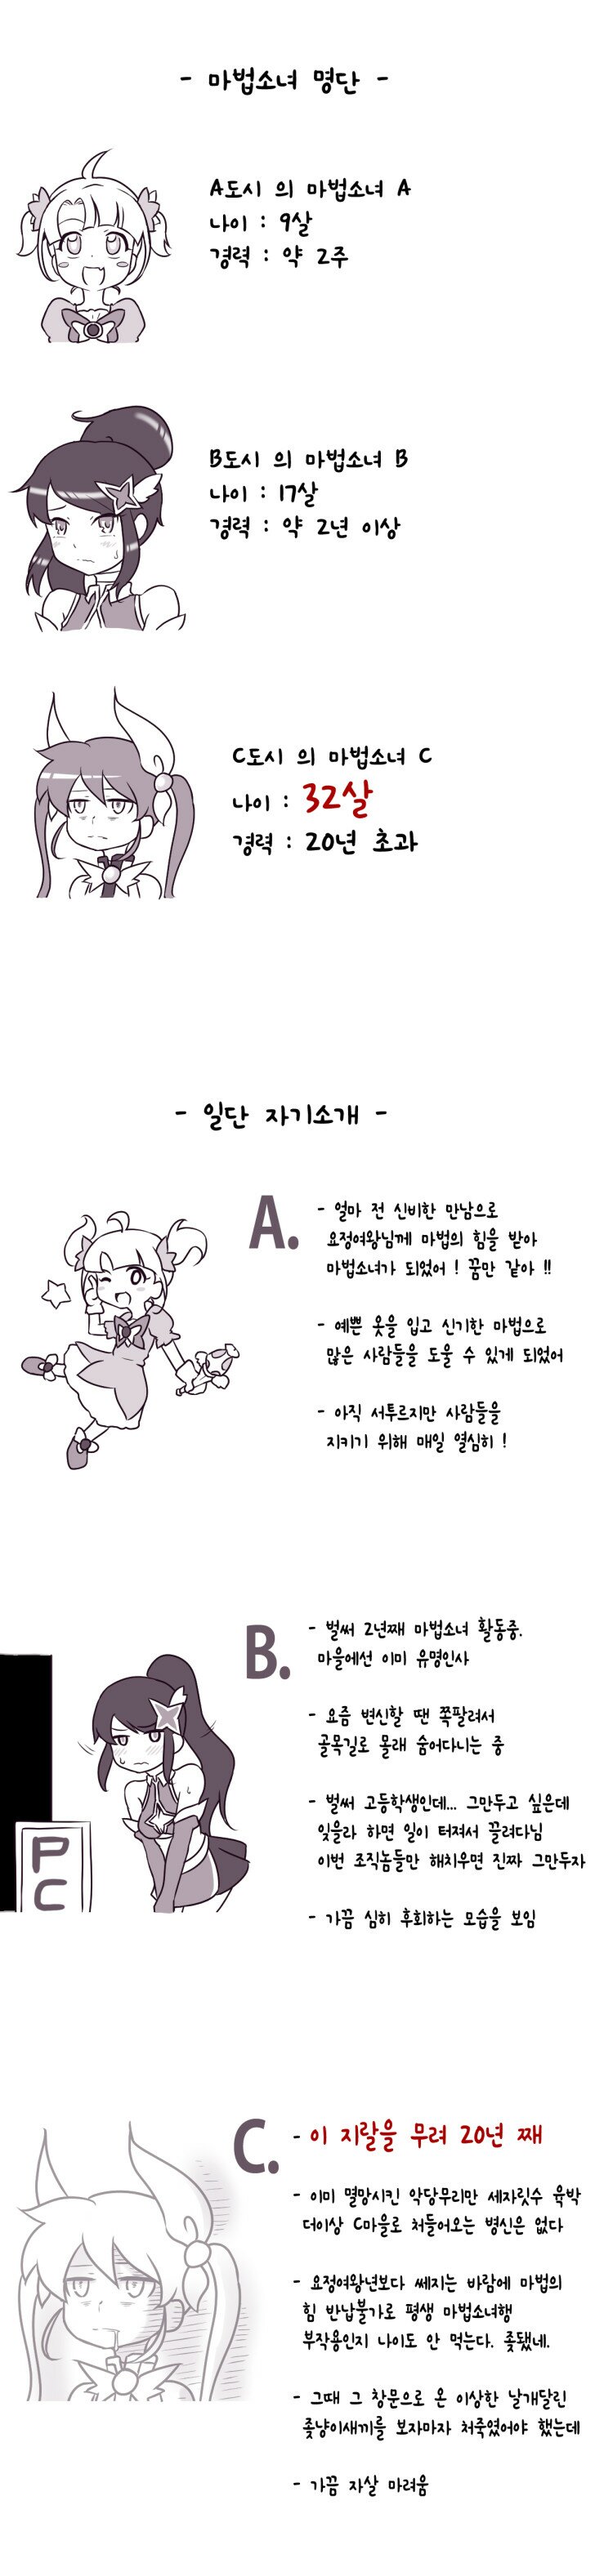 신입경력 마법소녀 소개하는 만화